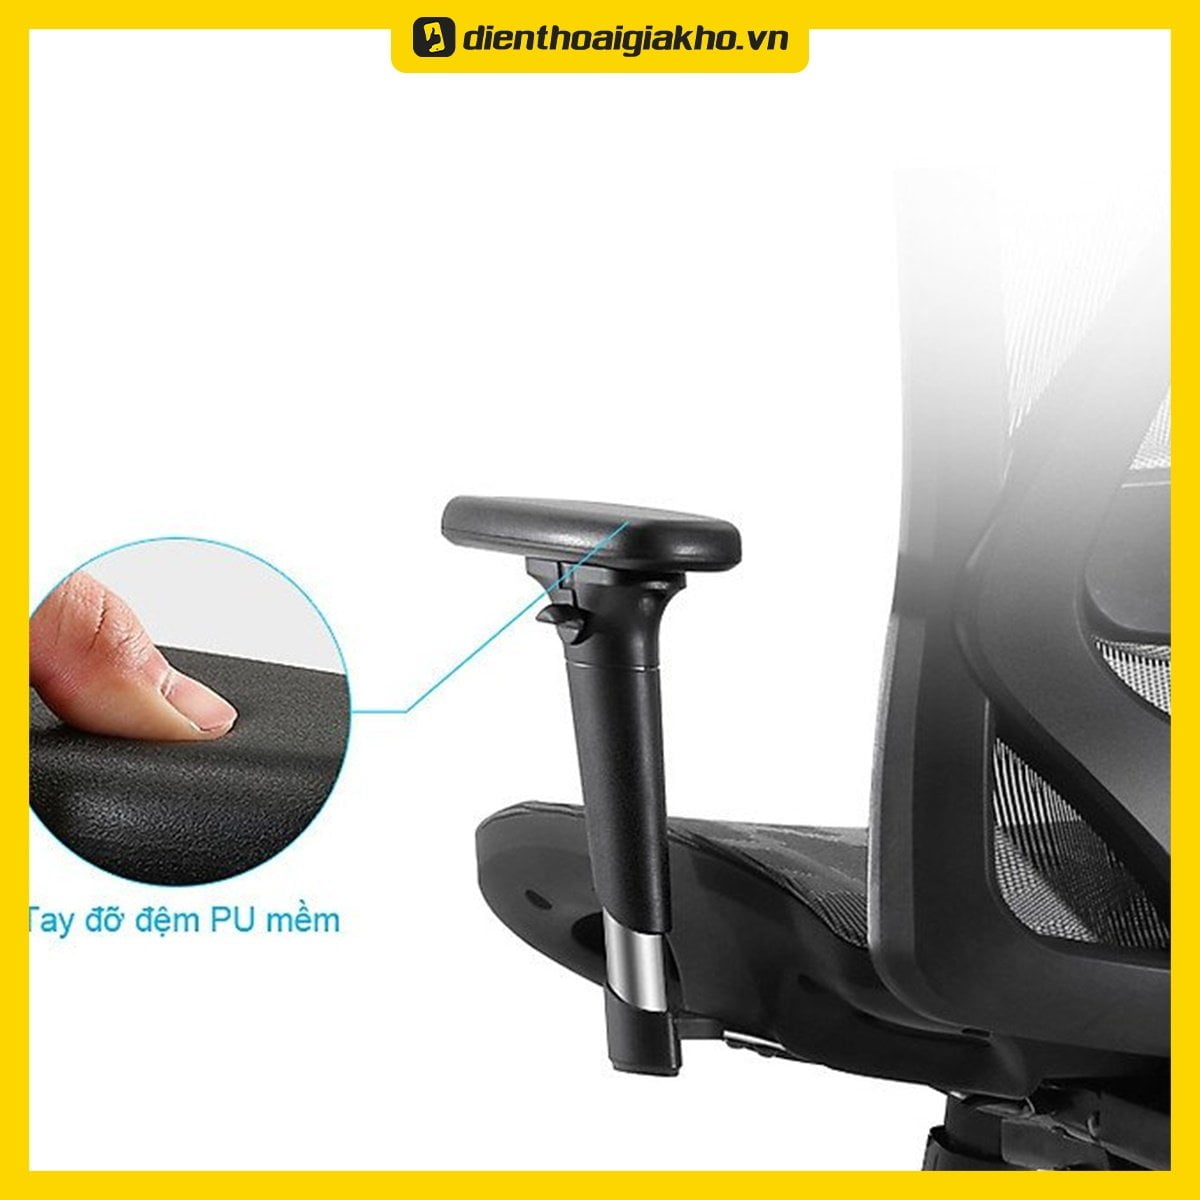 Ghế văn phòng cao cấp Ergonomic ERC-57 trang bị đỡ tay điều chỉnh 3D linh hoạt điều chỉnh đỡ tay, bạn dễ dàng thay đổi theo tư thế ngồi.